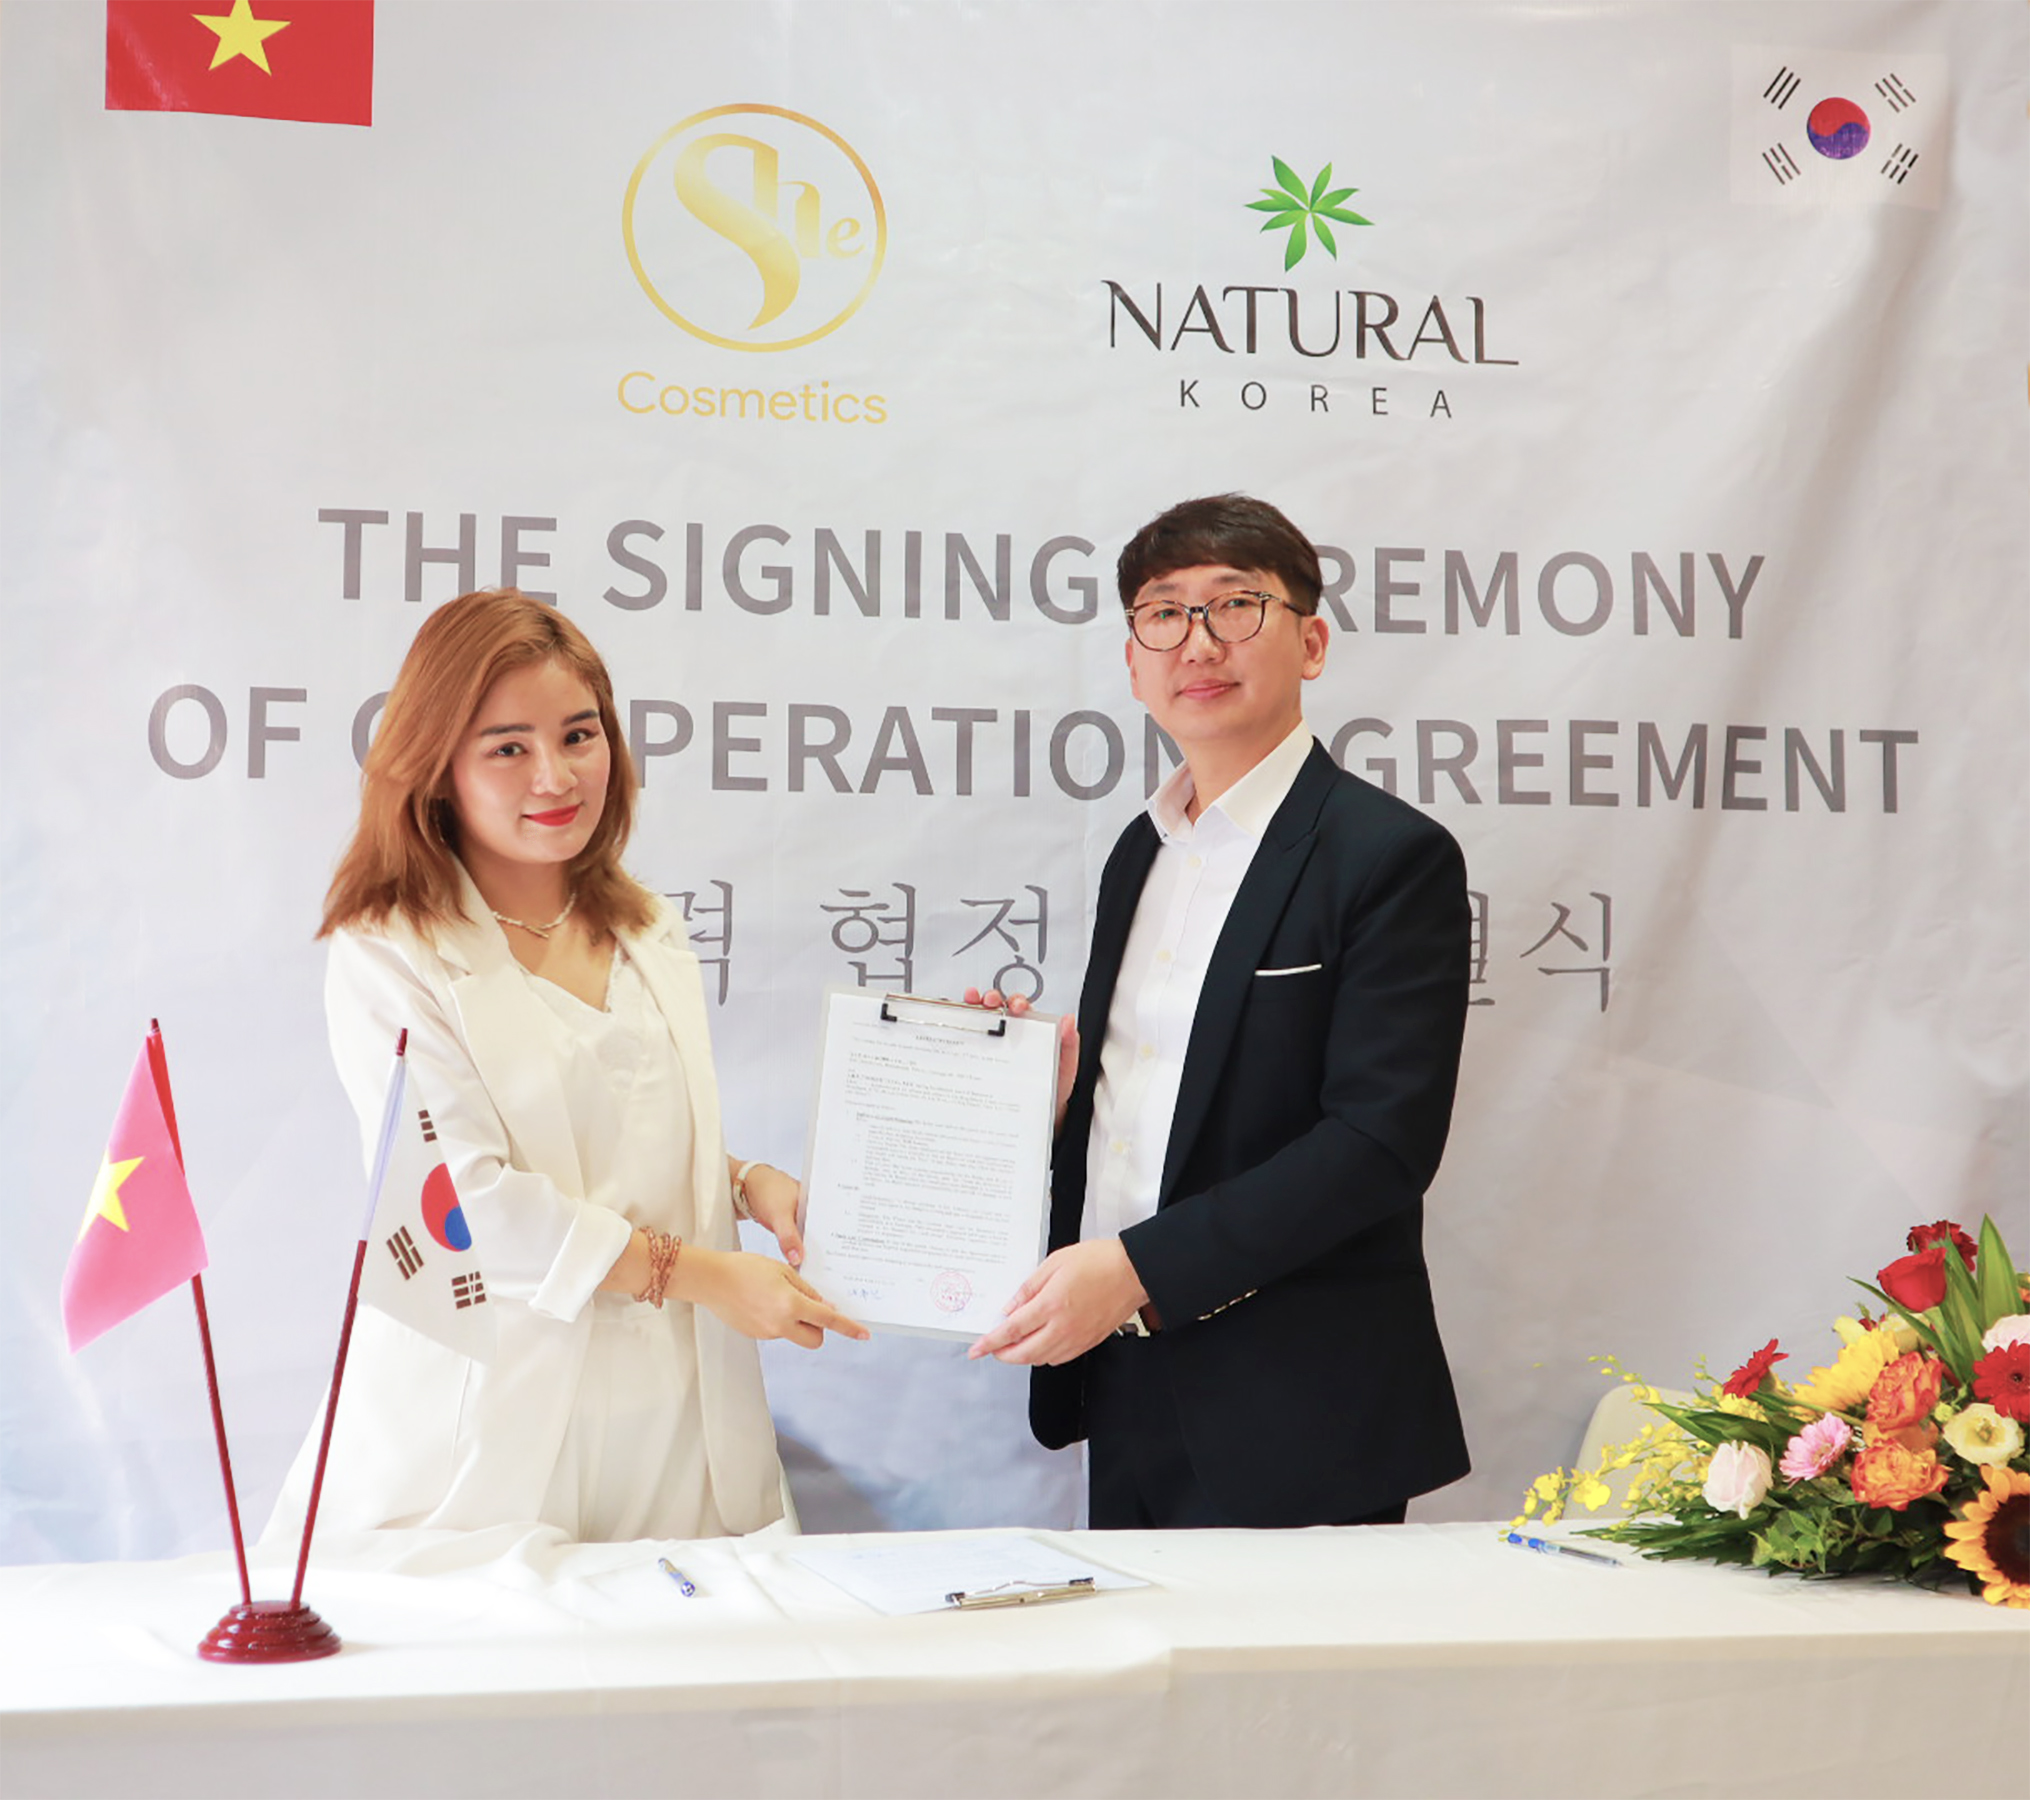 Lễ ký kết hợp tác giữa Shecosmetics và Natural Korea